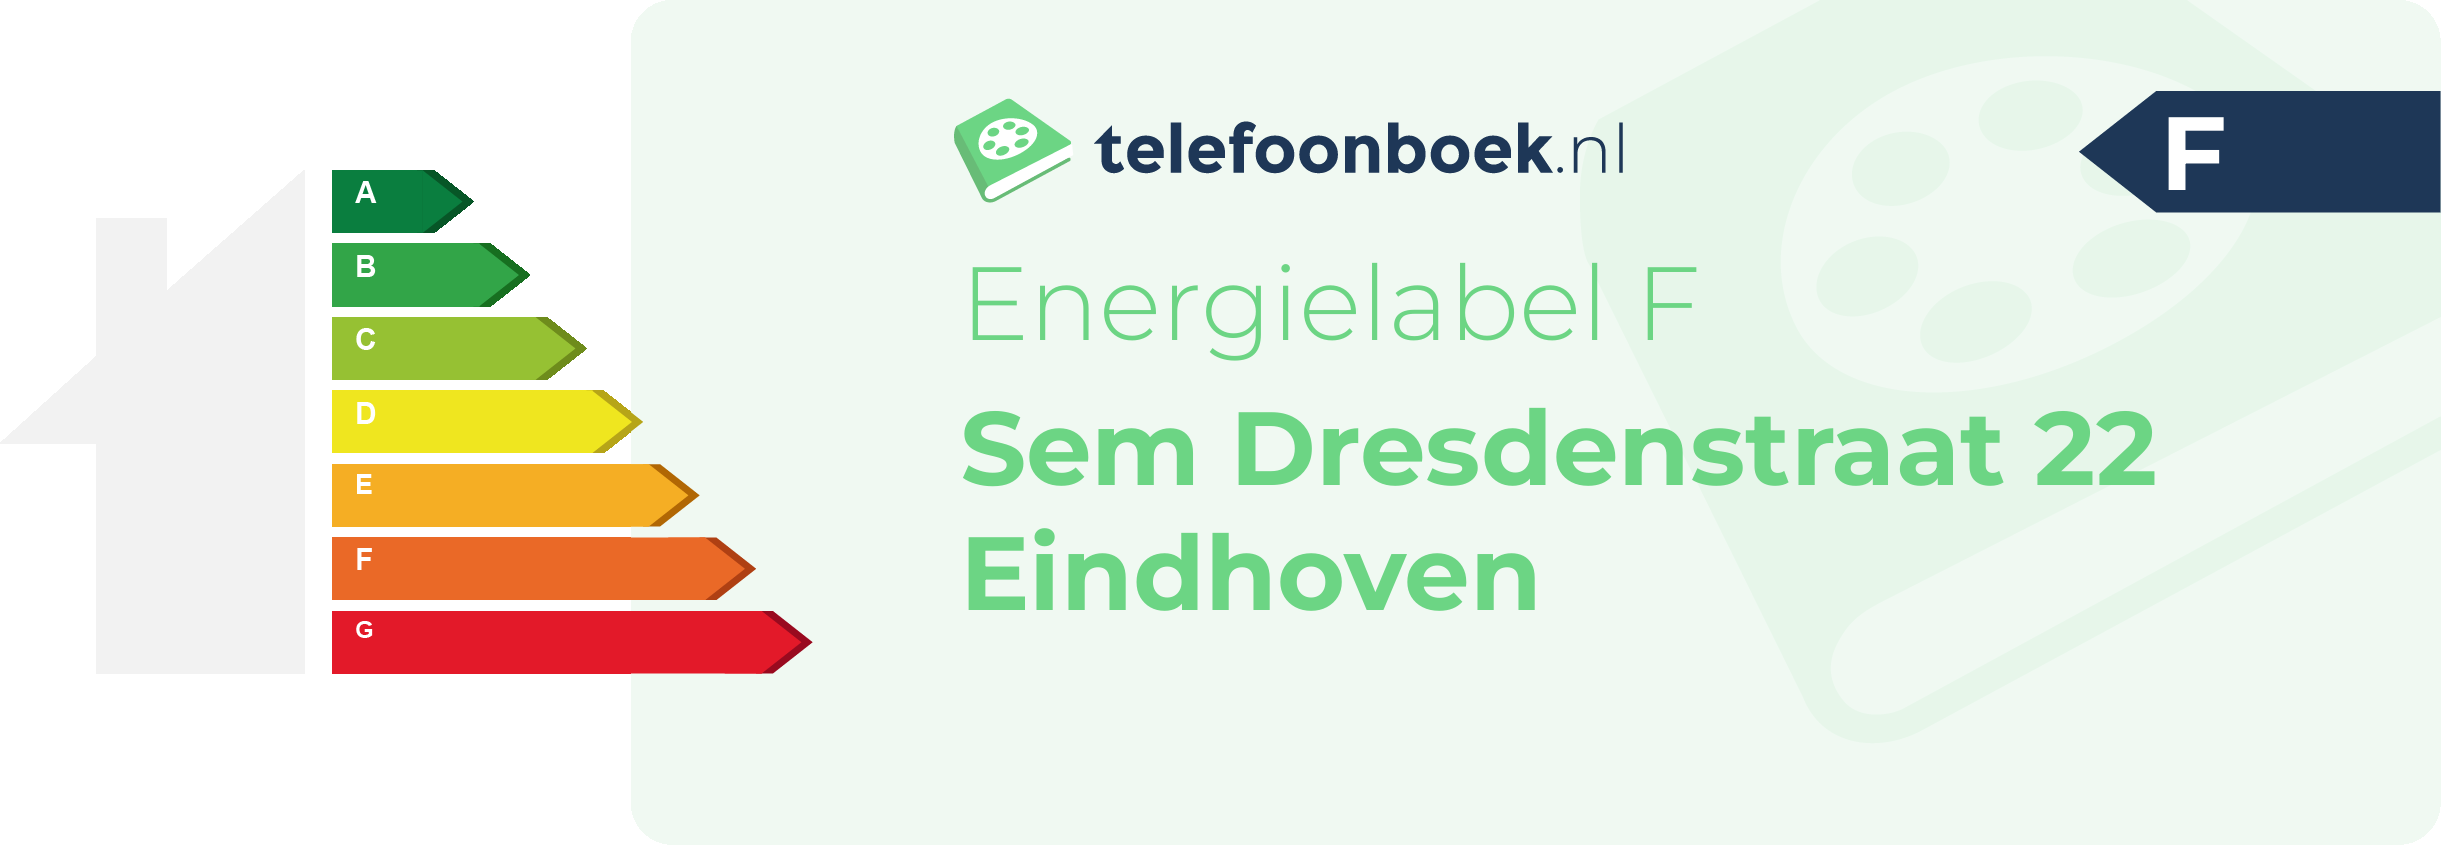 Energielabel Sem Dresdenstraat 22 Eindhoven